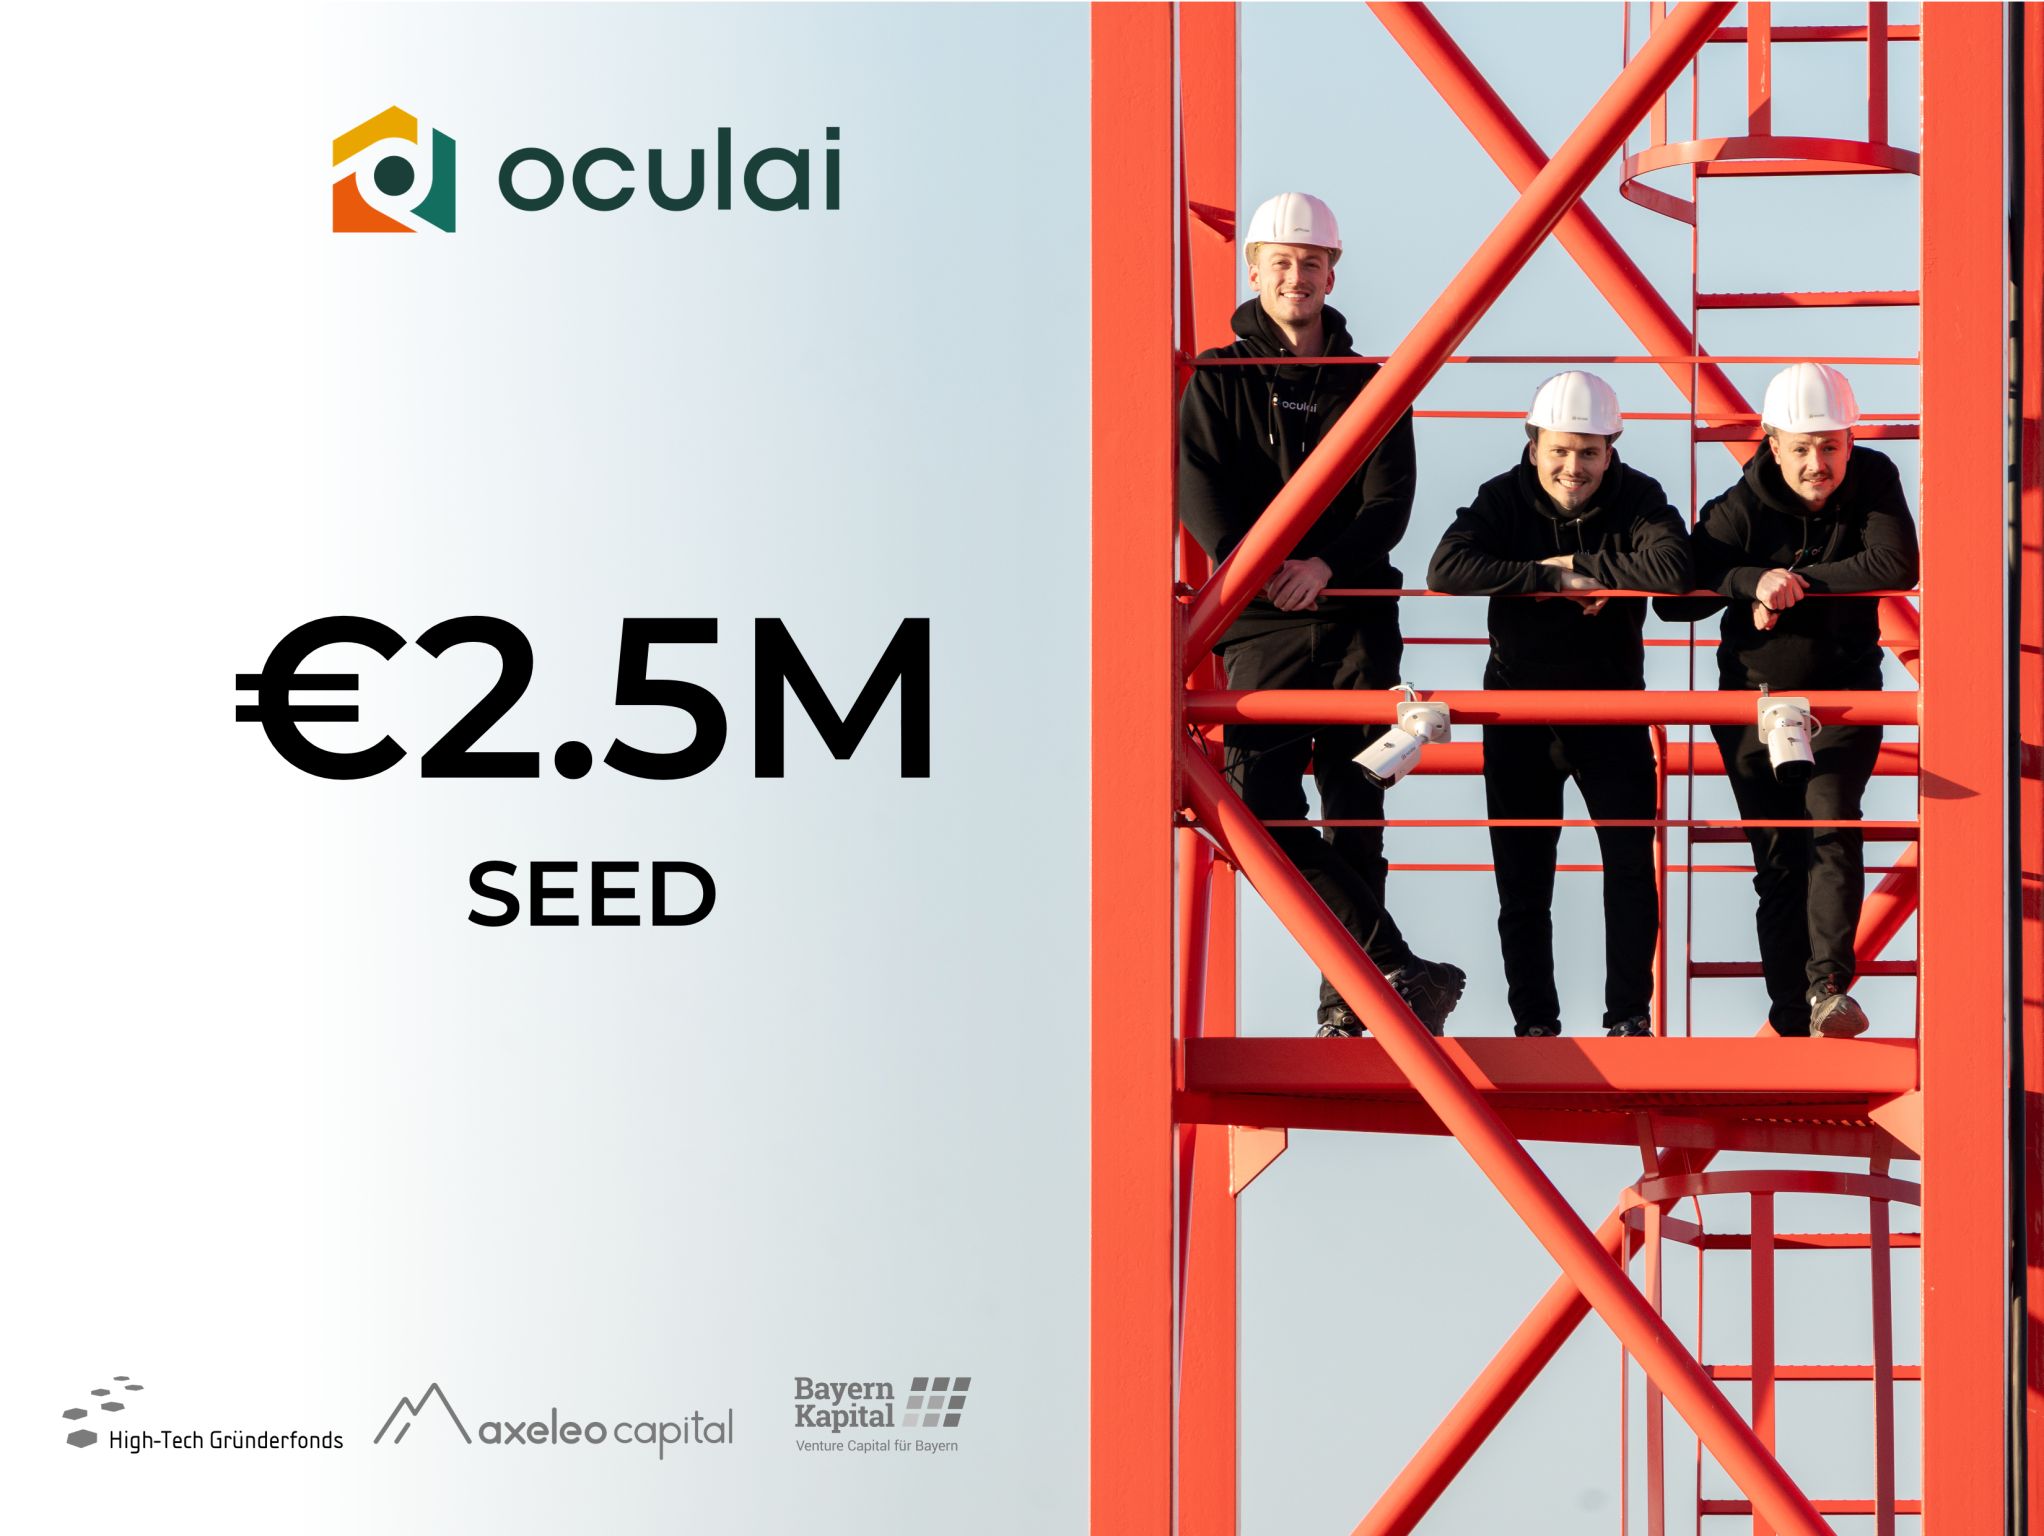 oculai, member of Leonard’s SEED 2022 program, completes €2.5 million seed round